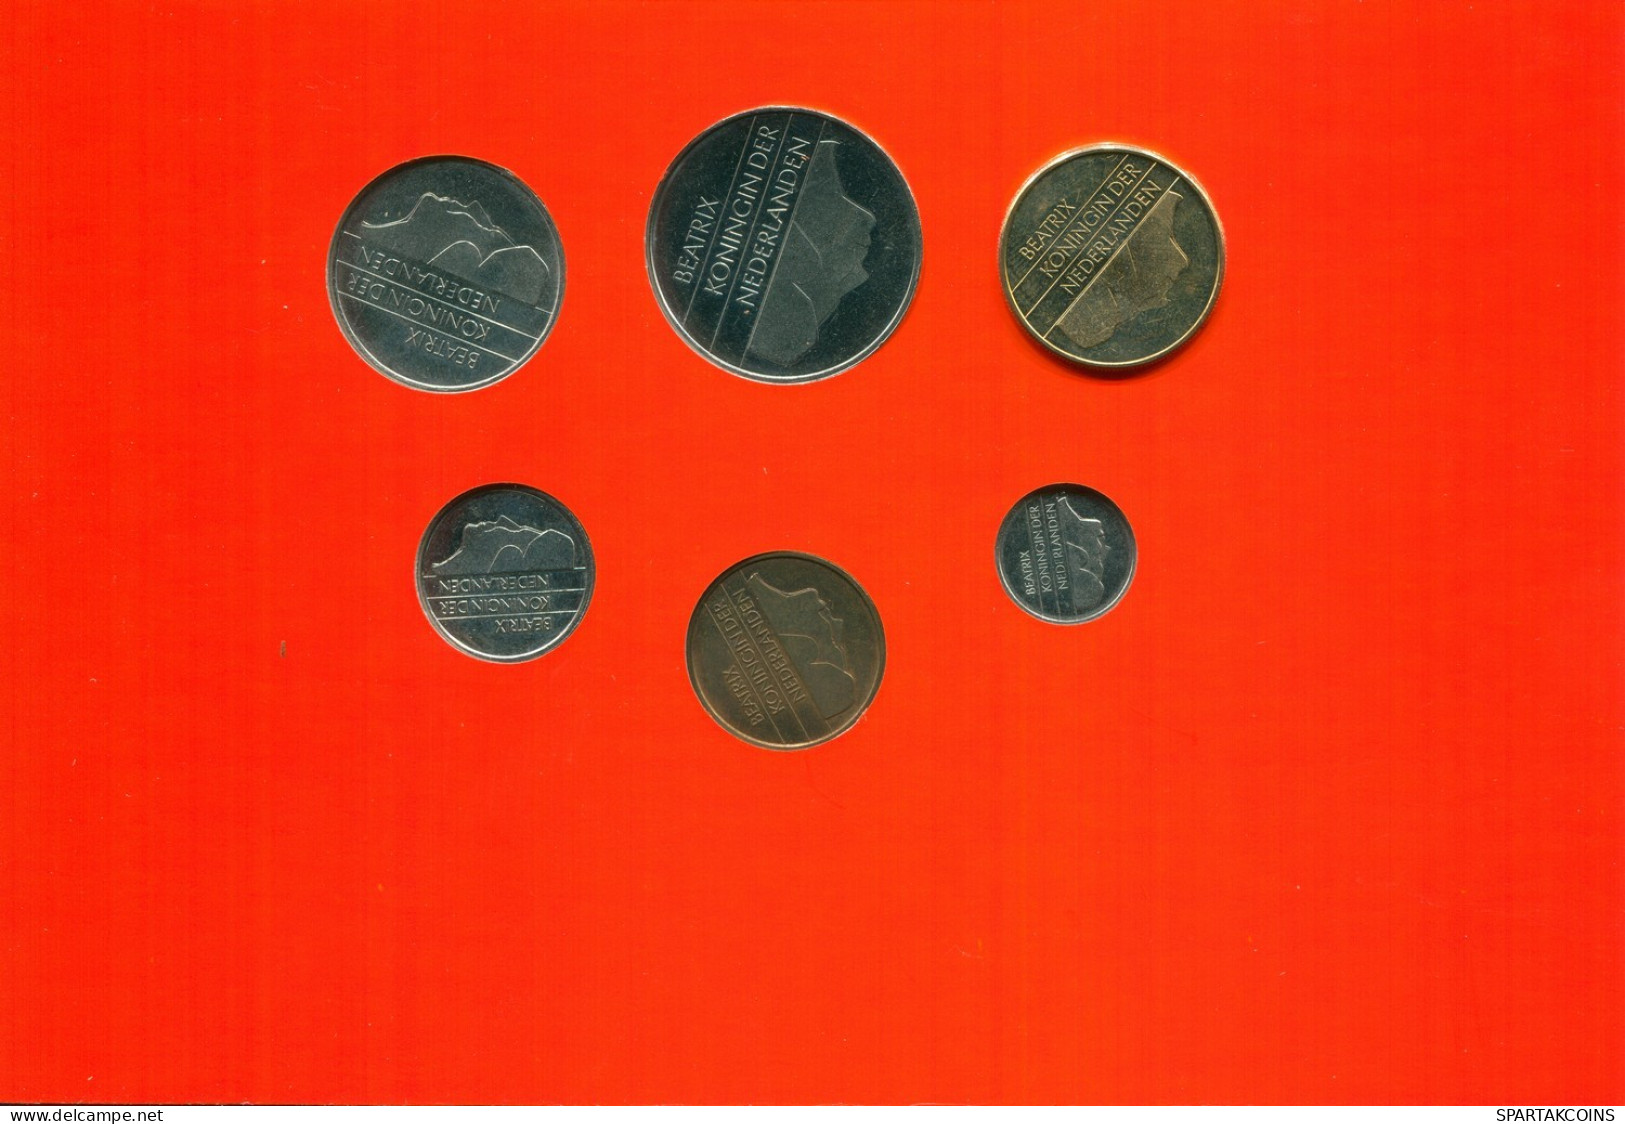 NIEDERLANDE NETHERLANDS 1994 MINT SET 6 Münze #SET1031.7.D.A - Mint Sets & Proof Sets